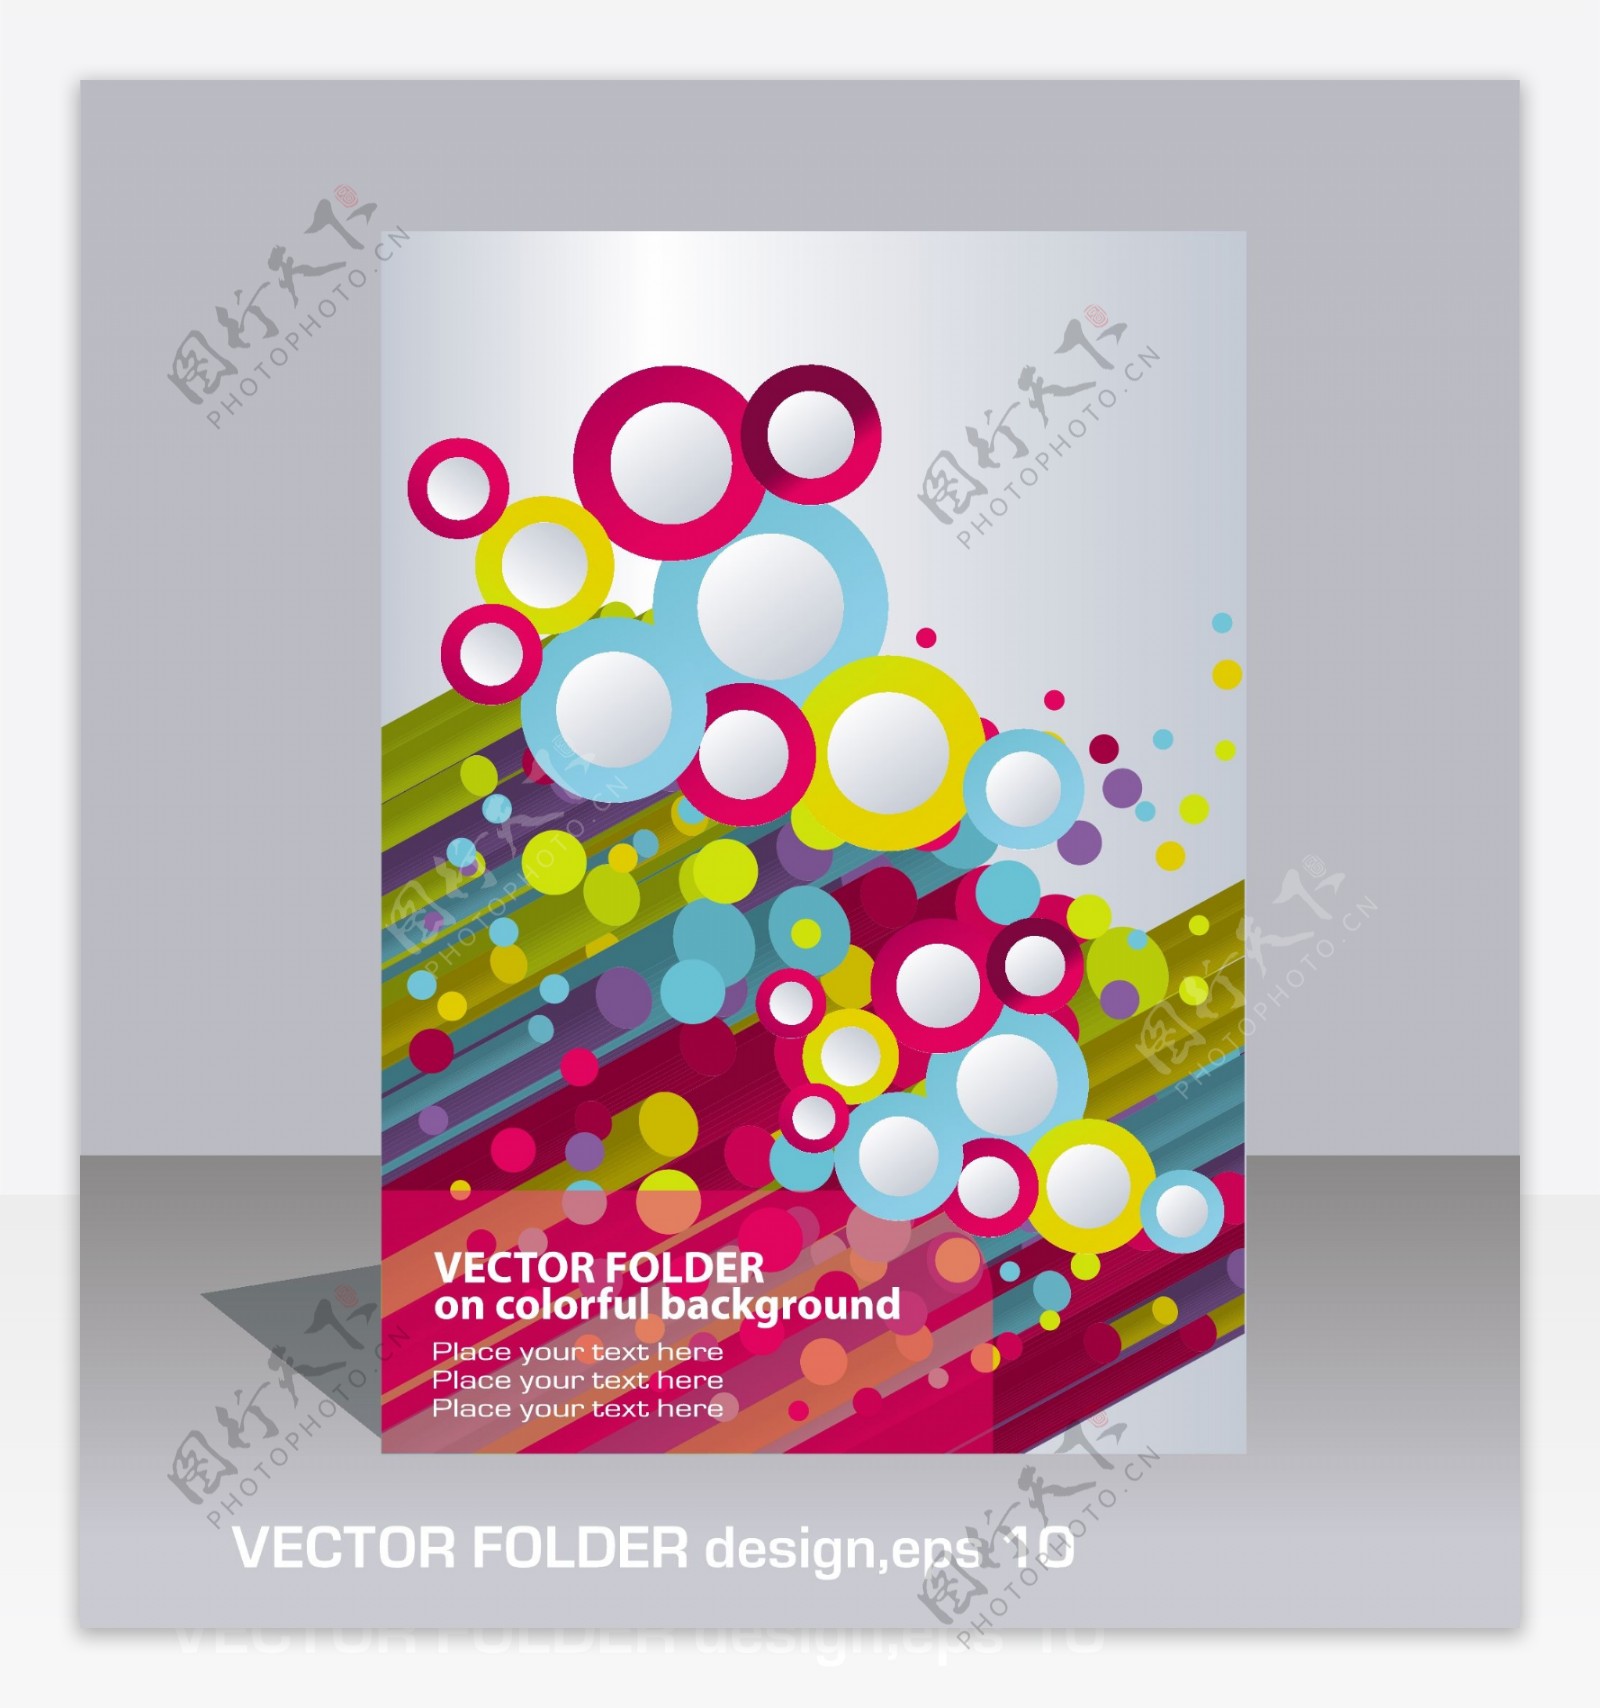 动感线条圈圈企业画册封面设计图片